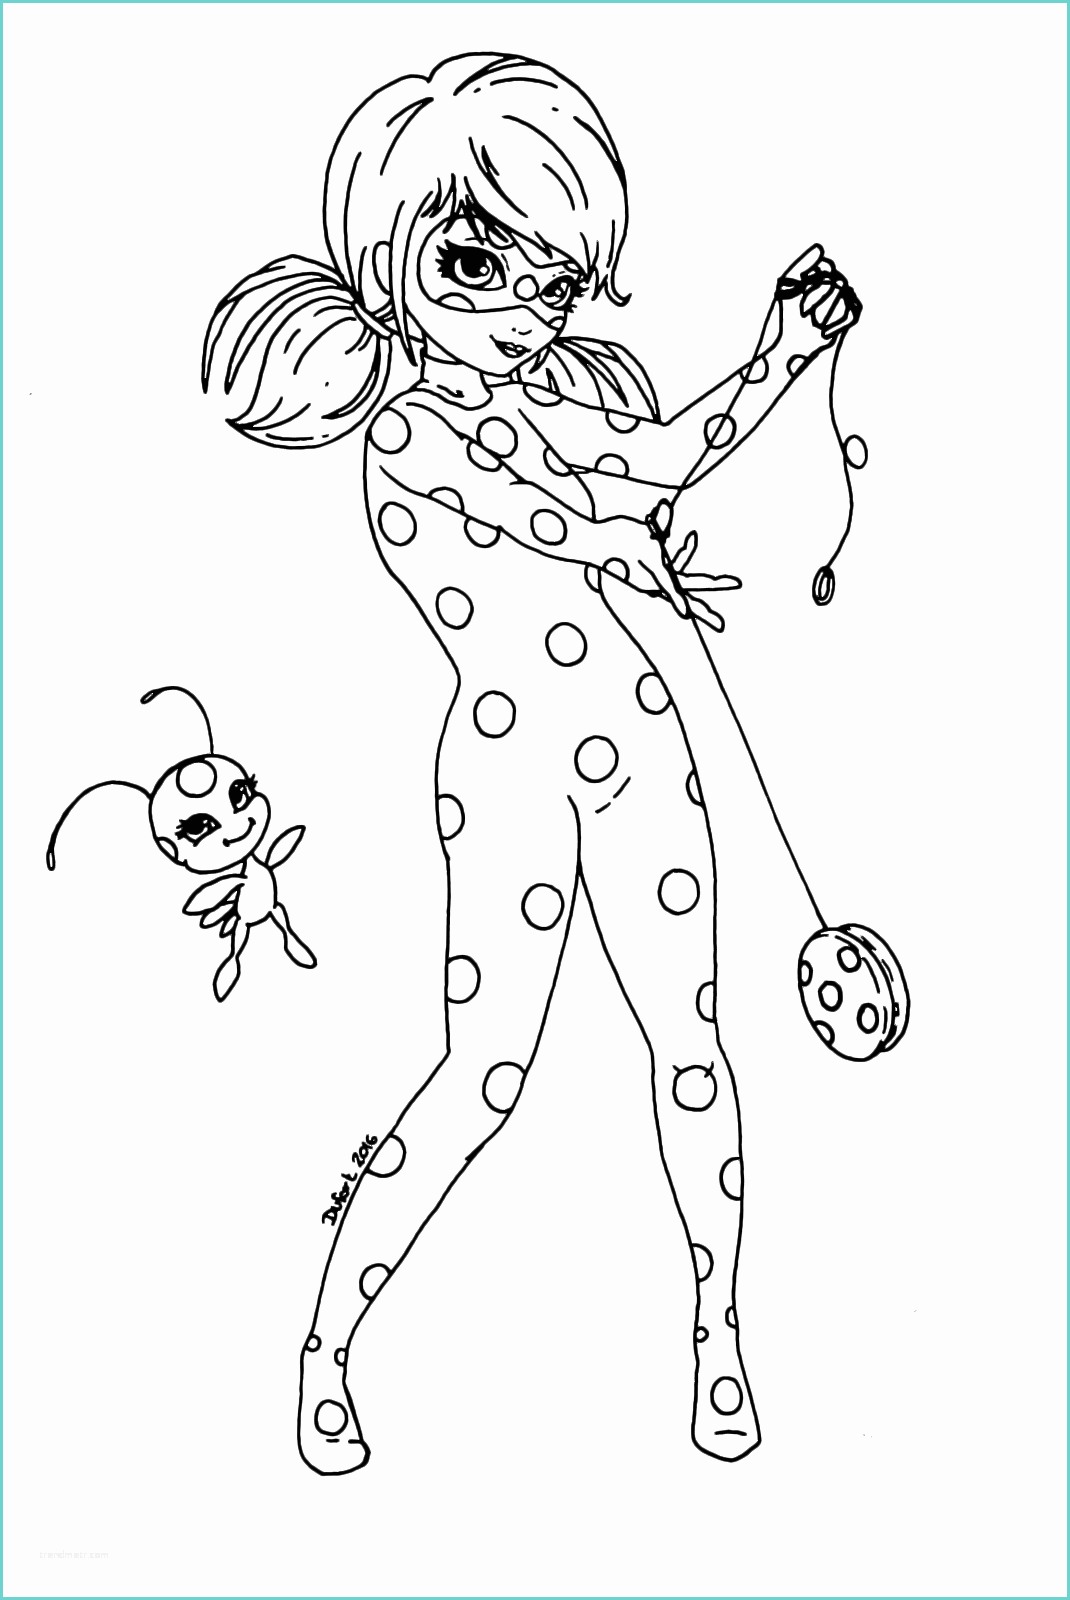 Immagini Chat Noir Da Colorare Disegno Di Ladybug In Azione Miraculous Da Colorare Sketch